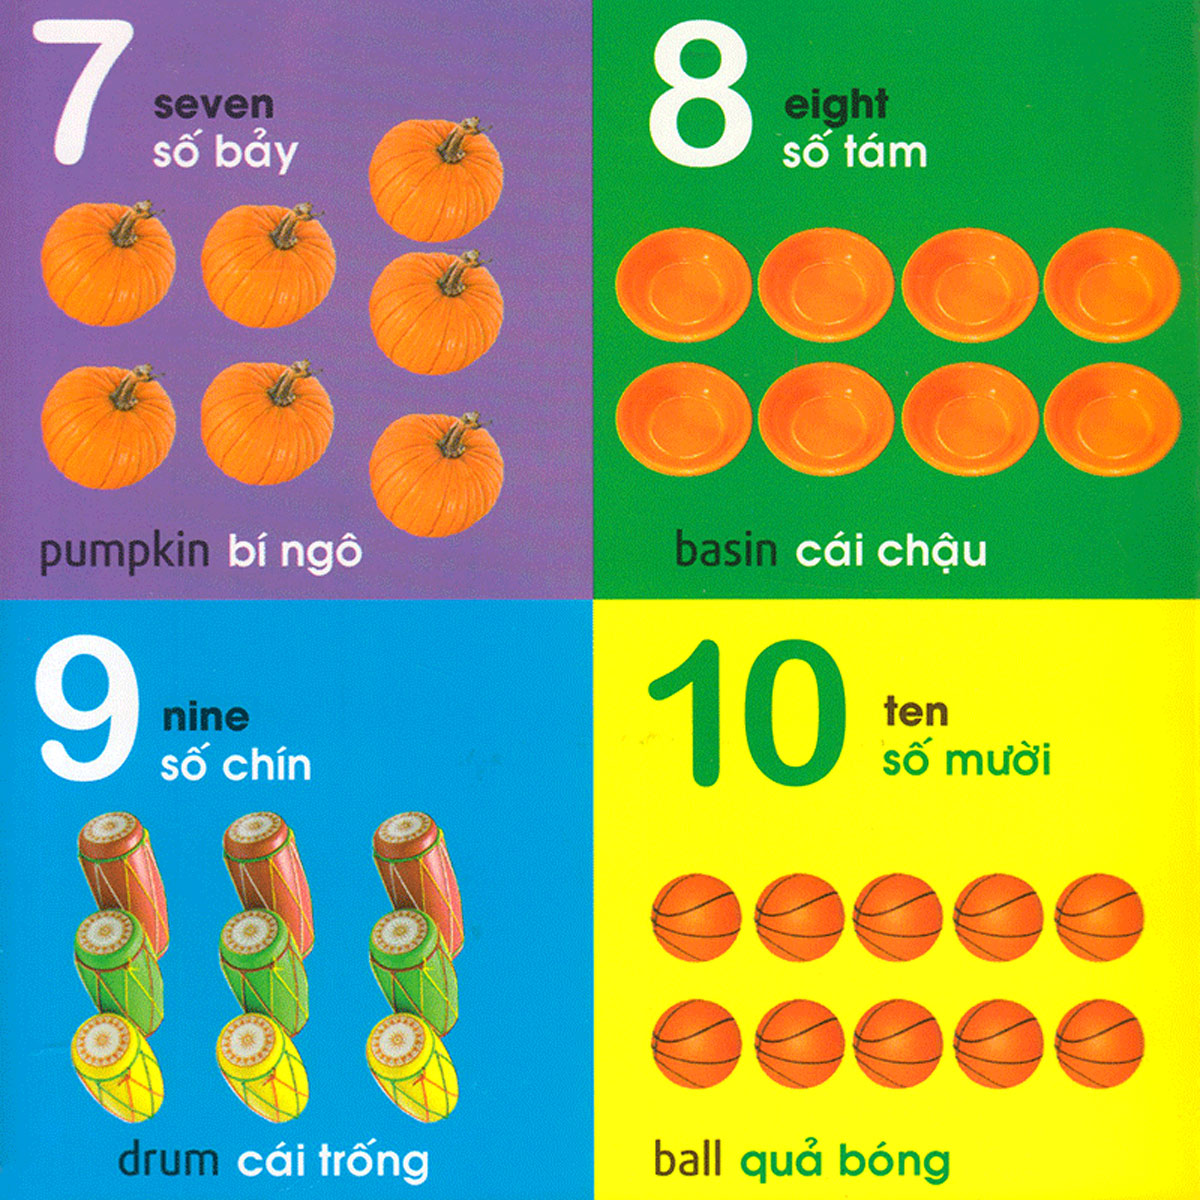 101 First Words: Numbers - Shapes - Colours (101 Từ Đầu Tiên: Chữ Số - Hình Dạng - Màu Sắc)_ML